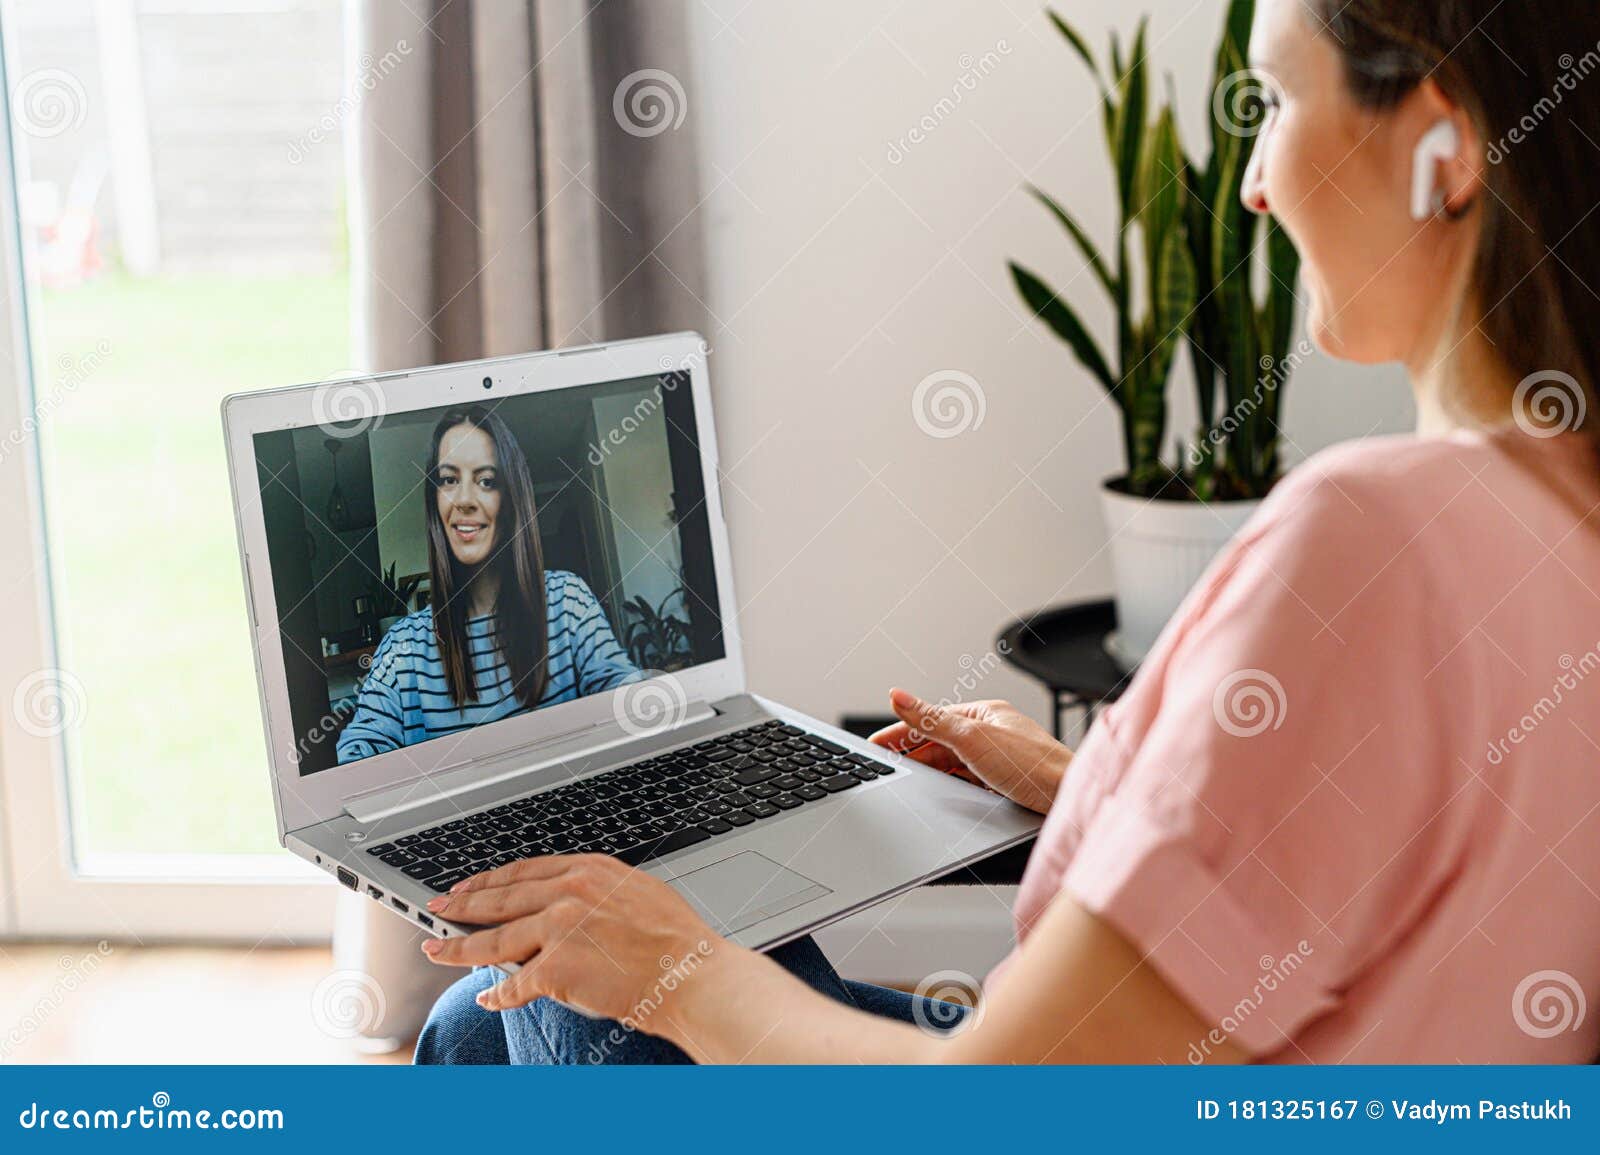 Best laptop video chat